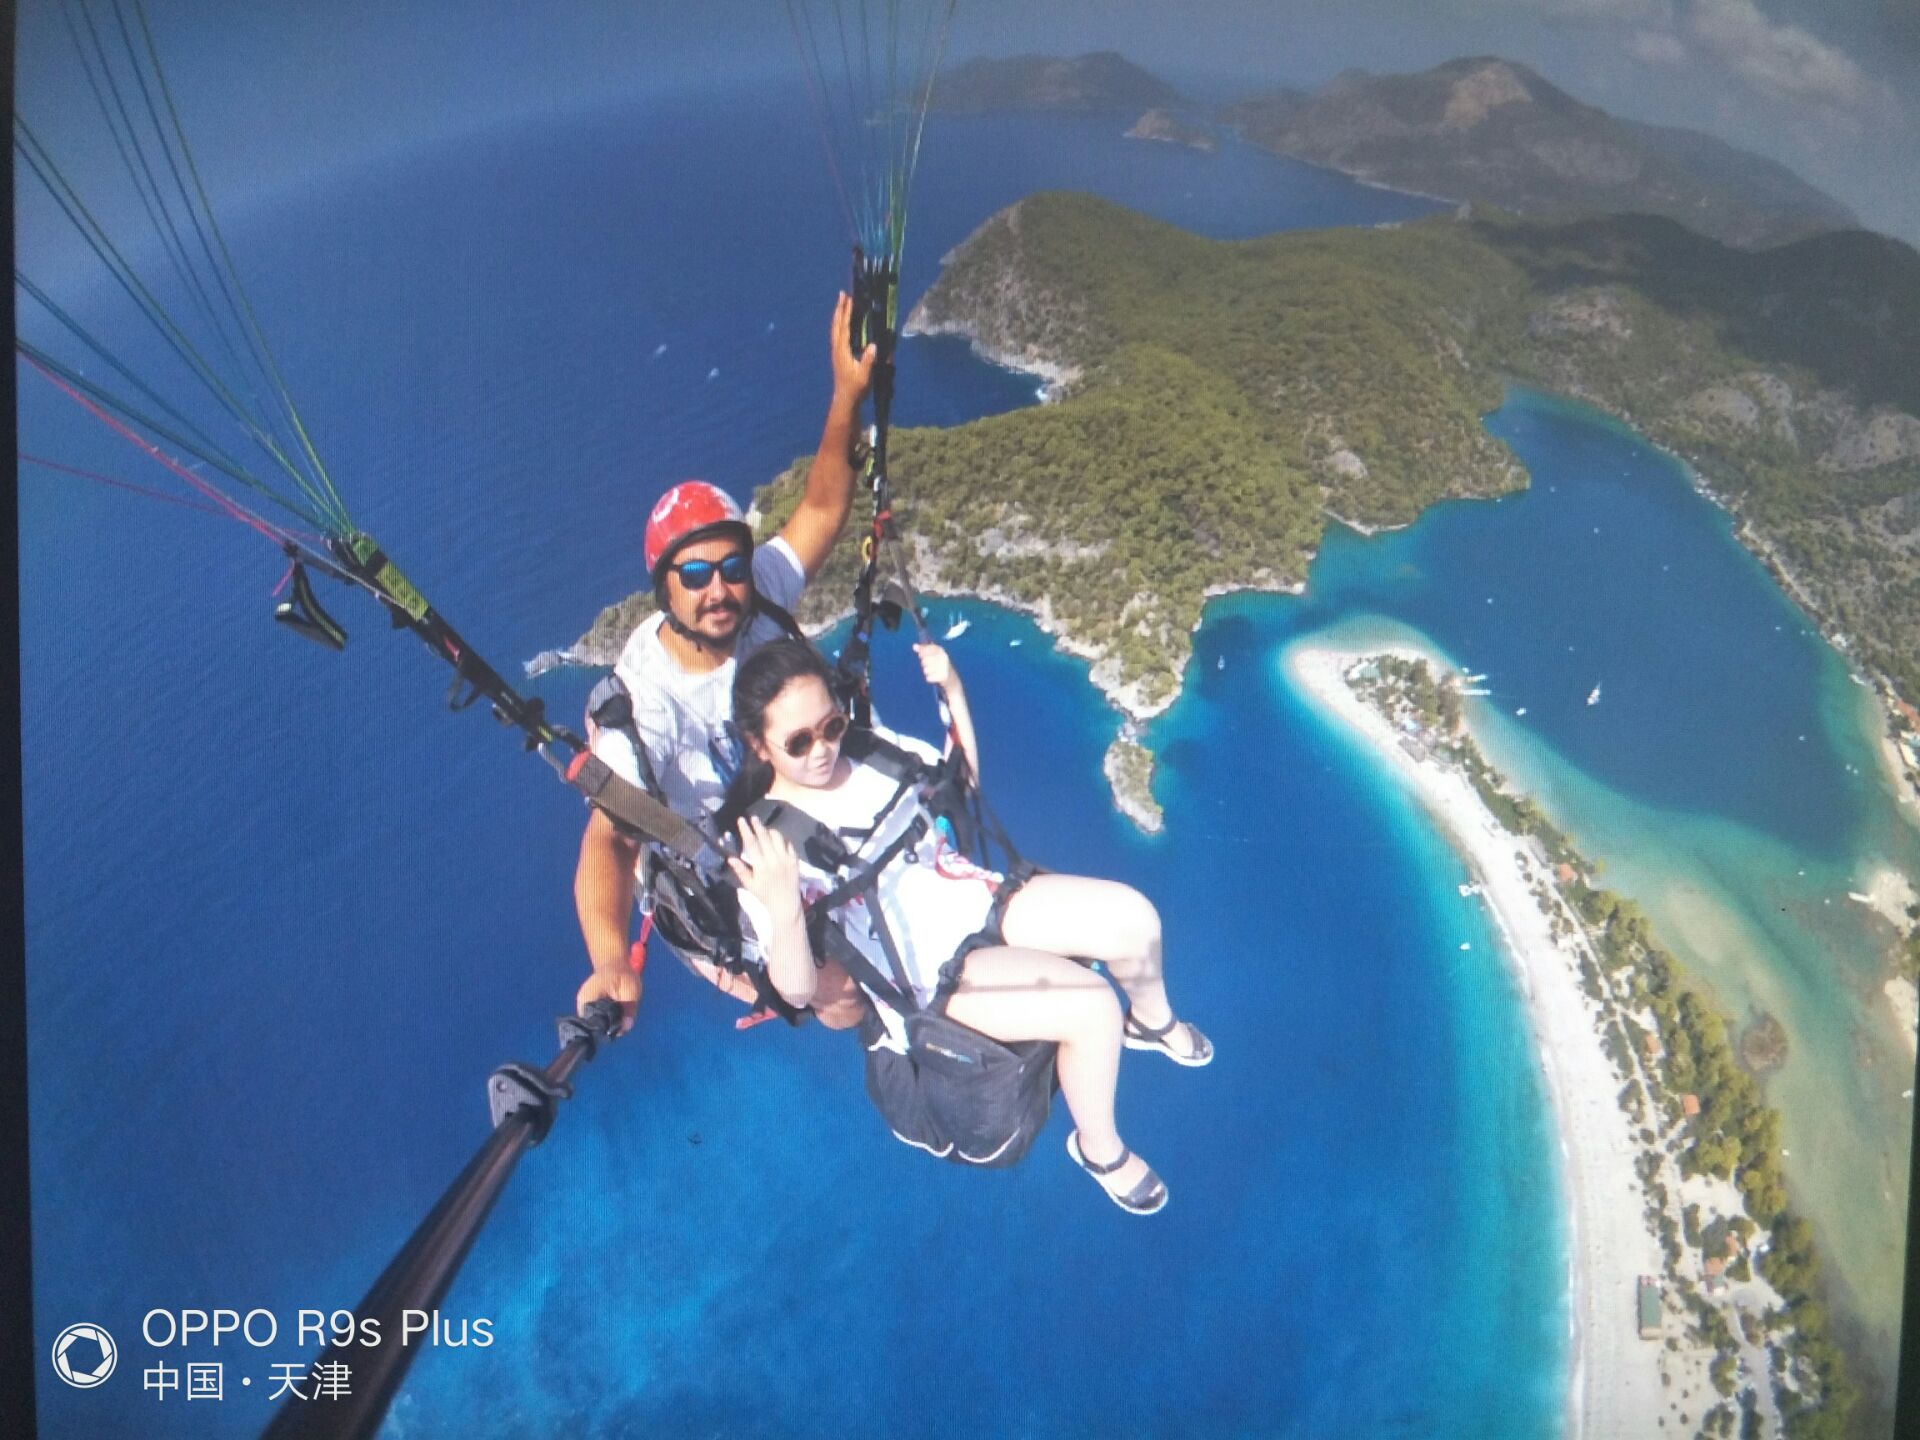 最佳体验点:在厄吕代尼兹(土耳其死海))海面上空，风景极佳，到了土耳其一定要在费特希耶坐滑翔伞。 清